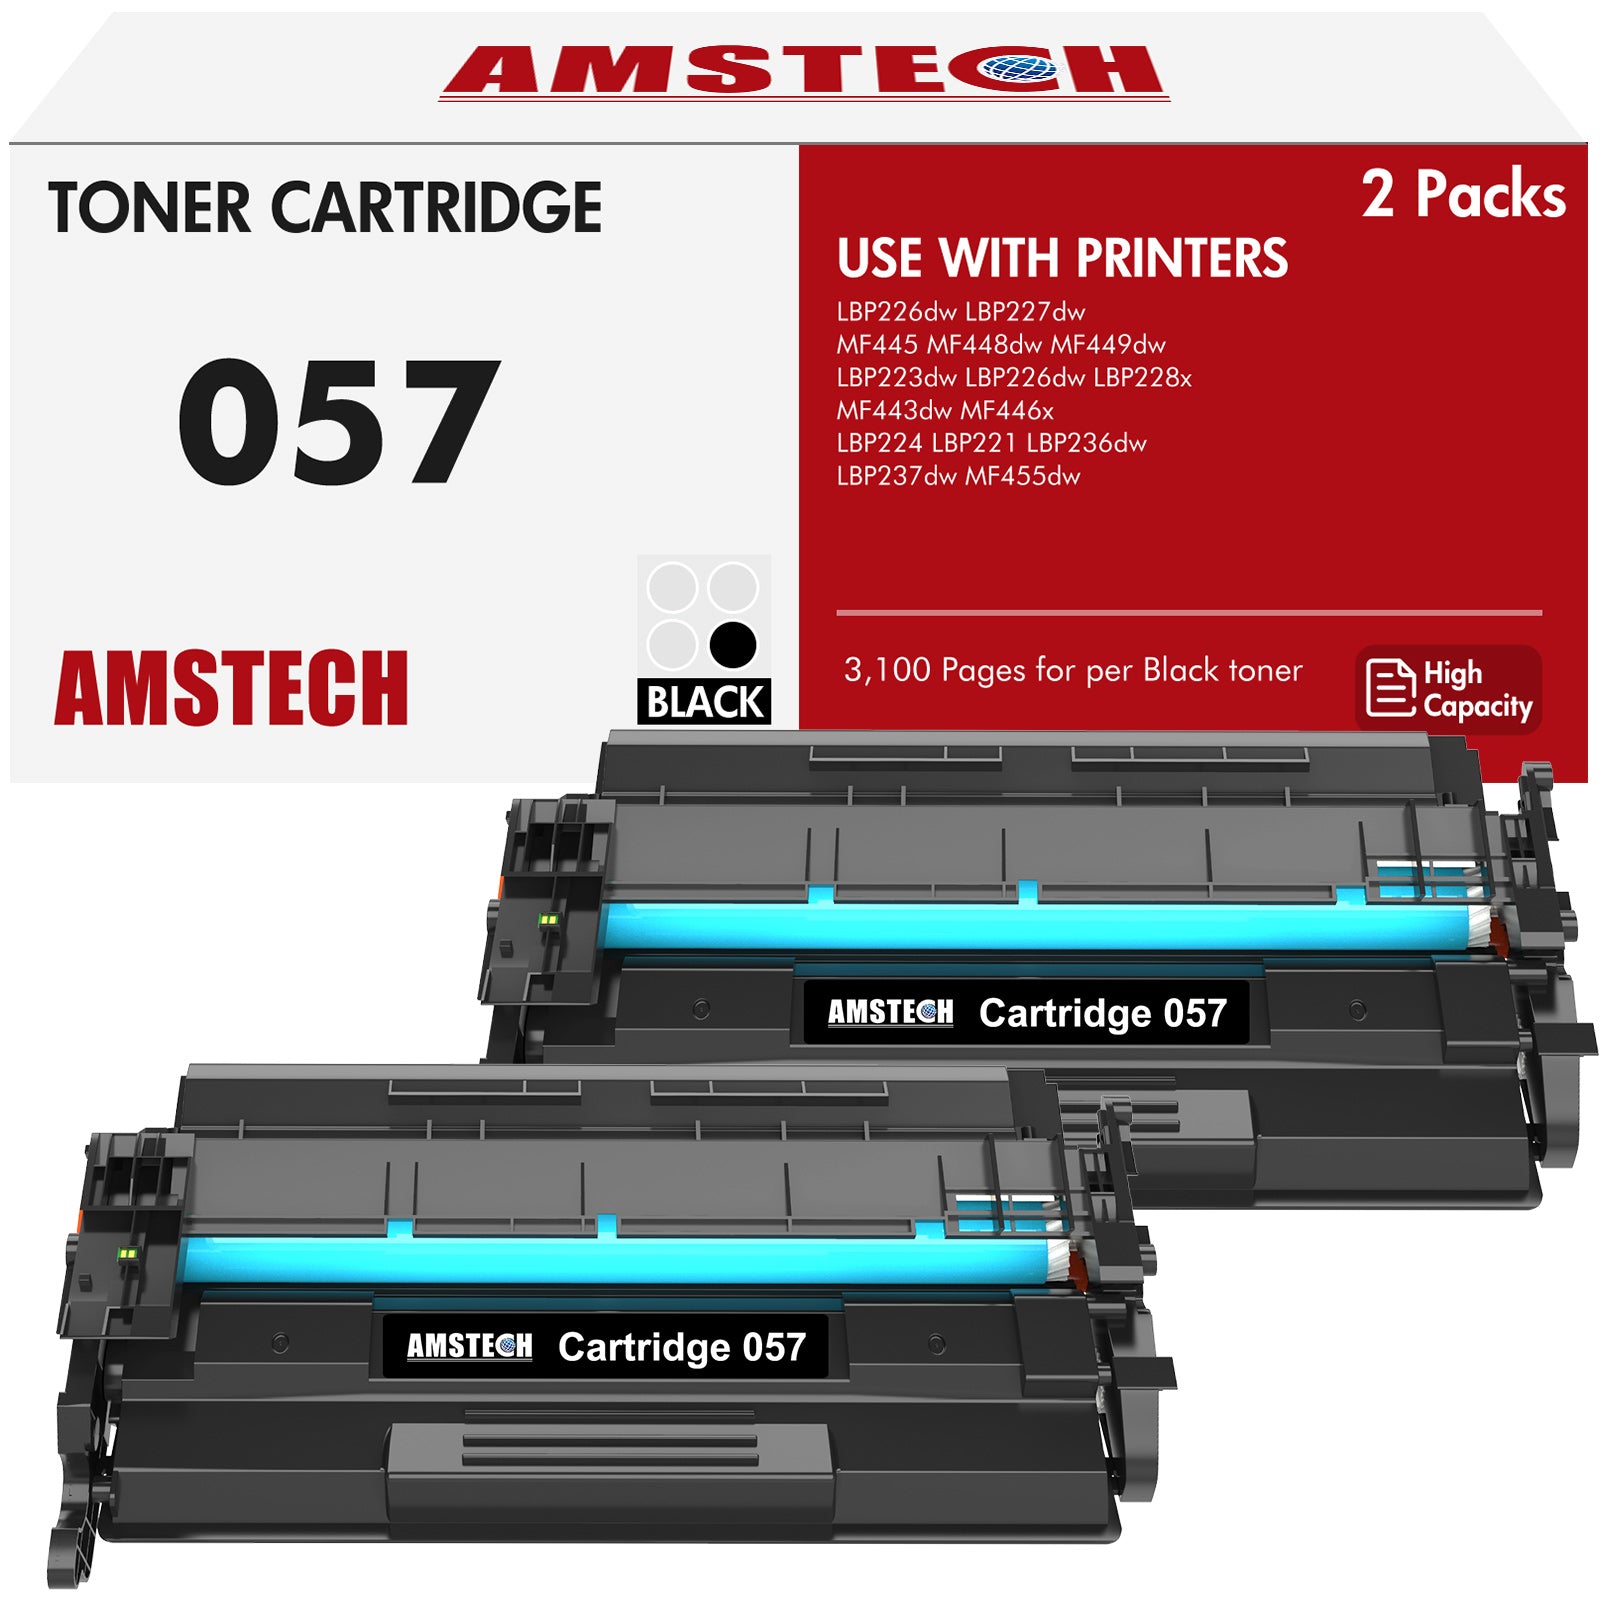 Canon Genuine Toner Cartridge 057 Black, High Capacity (3010C001), 1-Pack  imageCLASS MF449dw, MF448dw, MF445dw, LBP228dw, LBP227dw, LBP226dw Laser